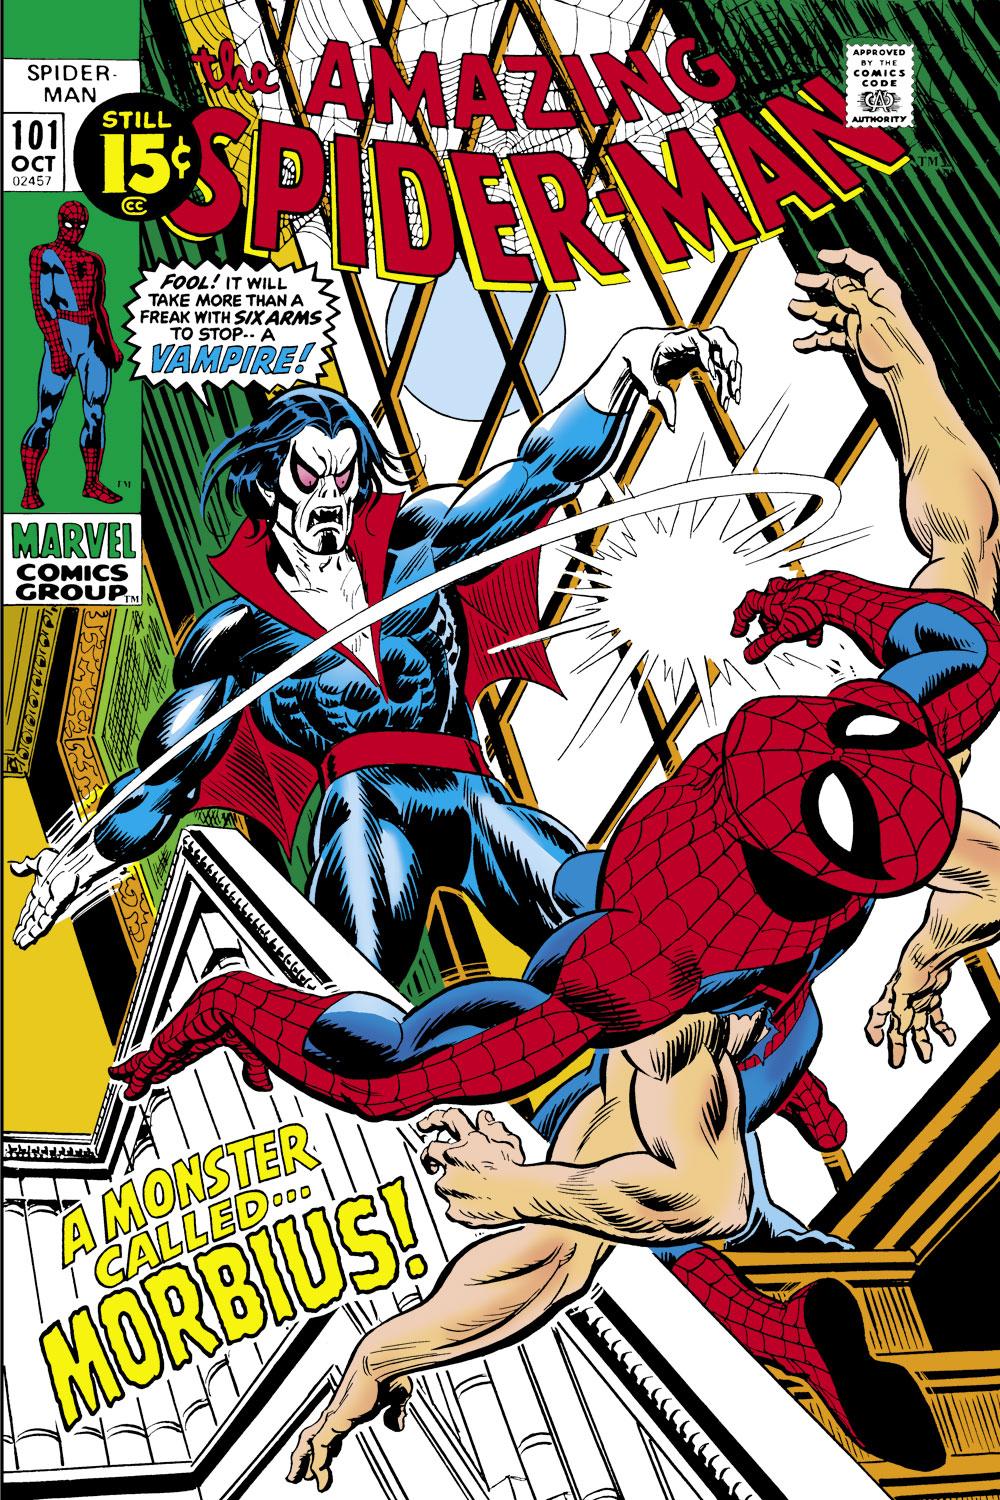 Phải chăng Morbius sẽ mở ra đa vũ trụ với Spider-Man và các ác nhân? - Ảnh 2.